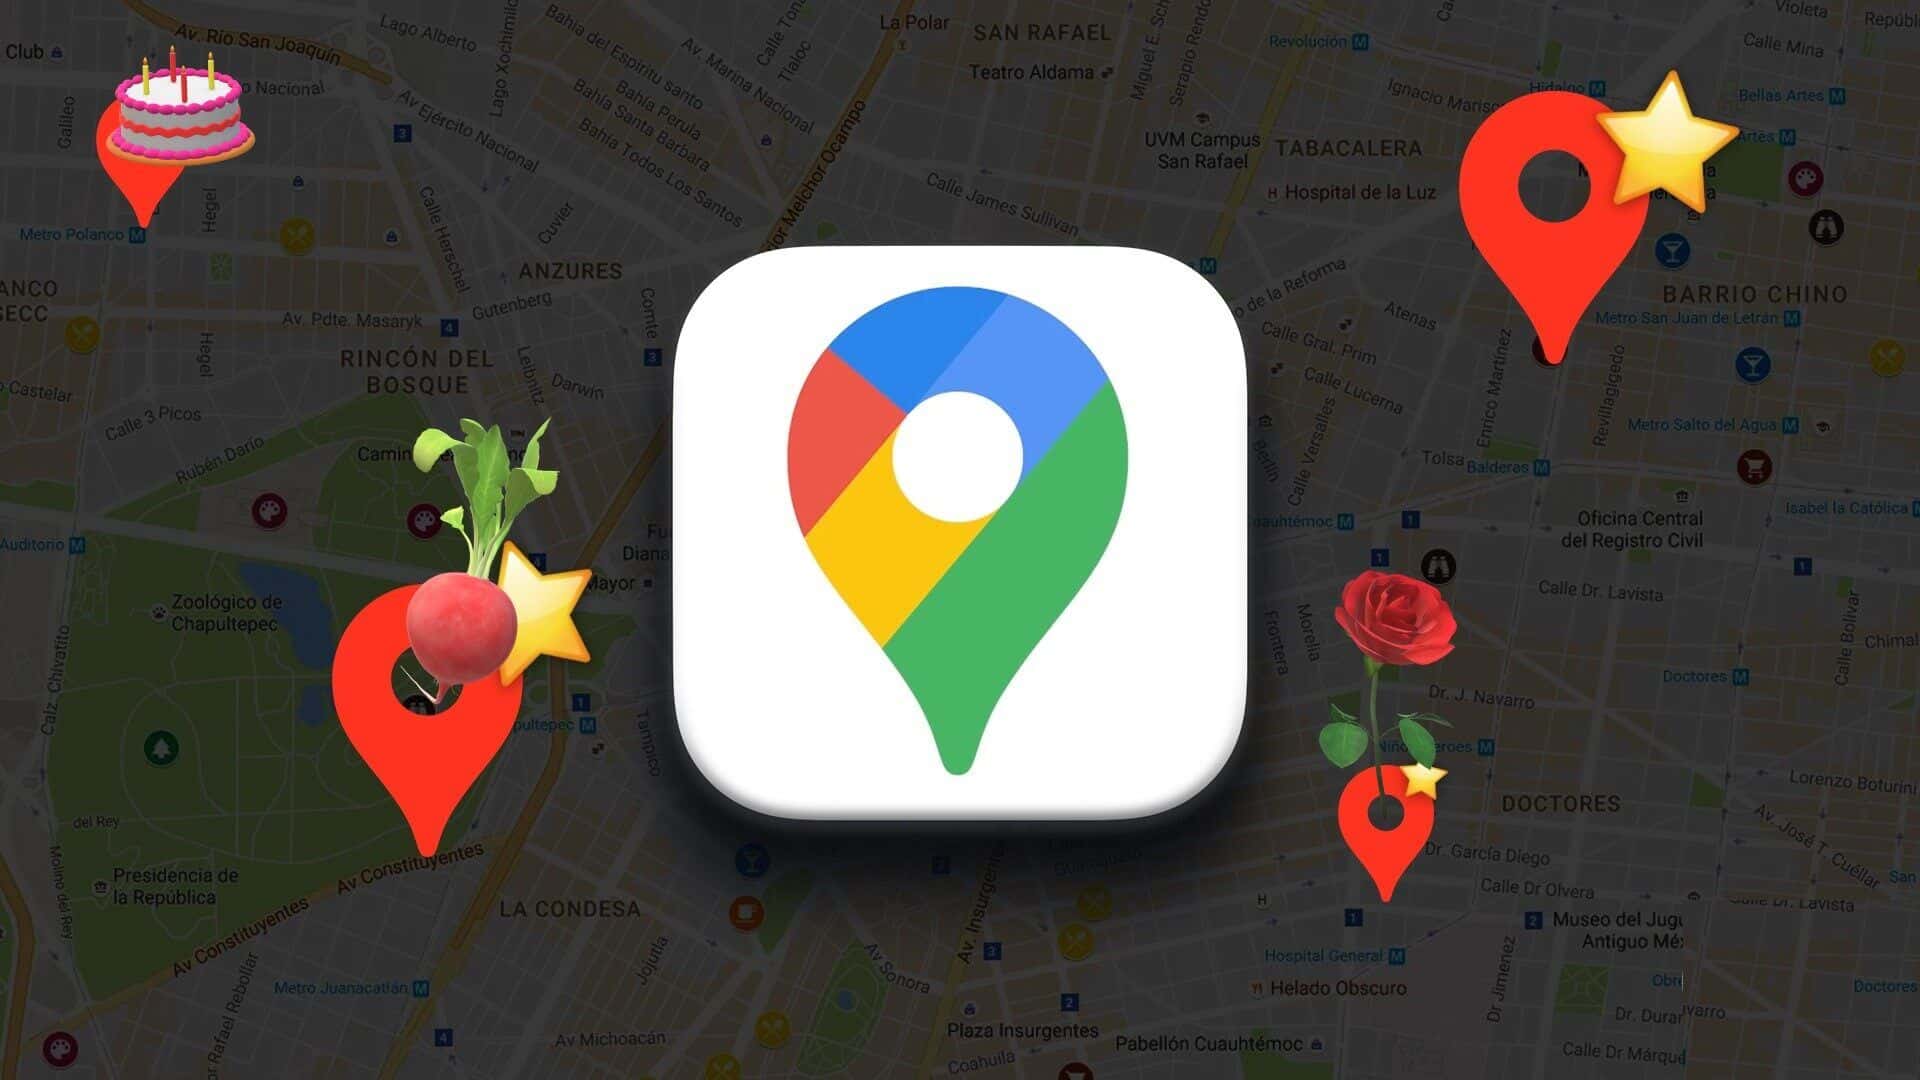 كيفية إنشاء قائمة بأماكنك المفضلة على Google Maps - %categories